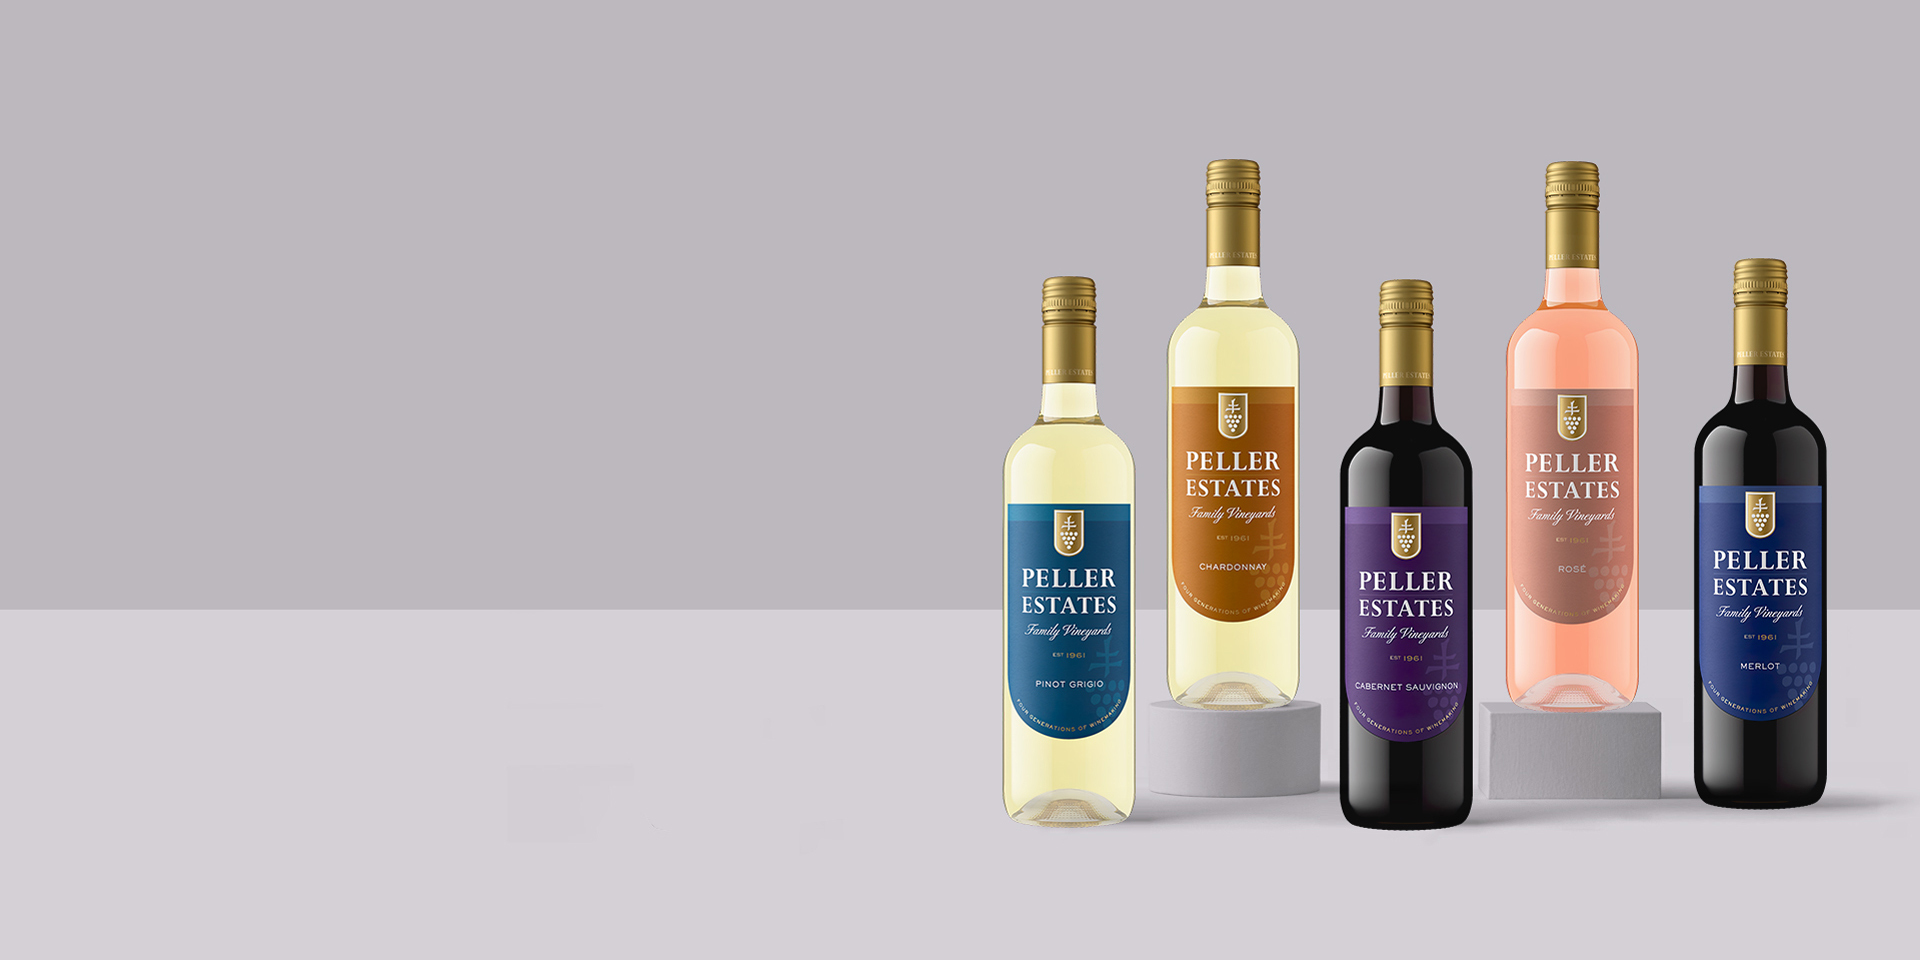 Peller Estates Wine Brand Redesign